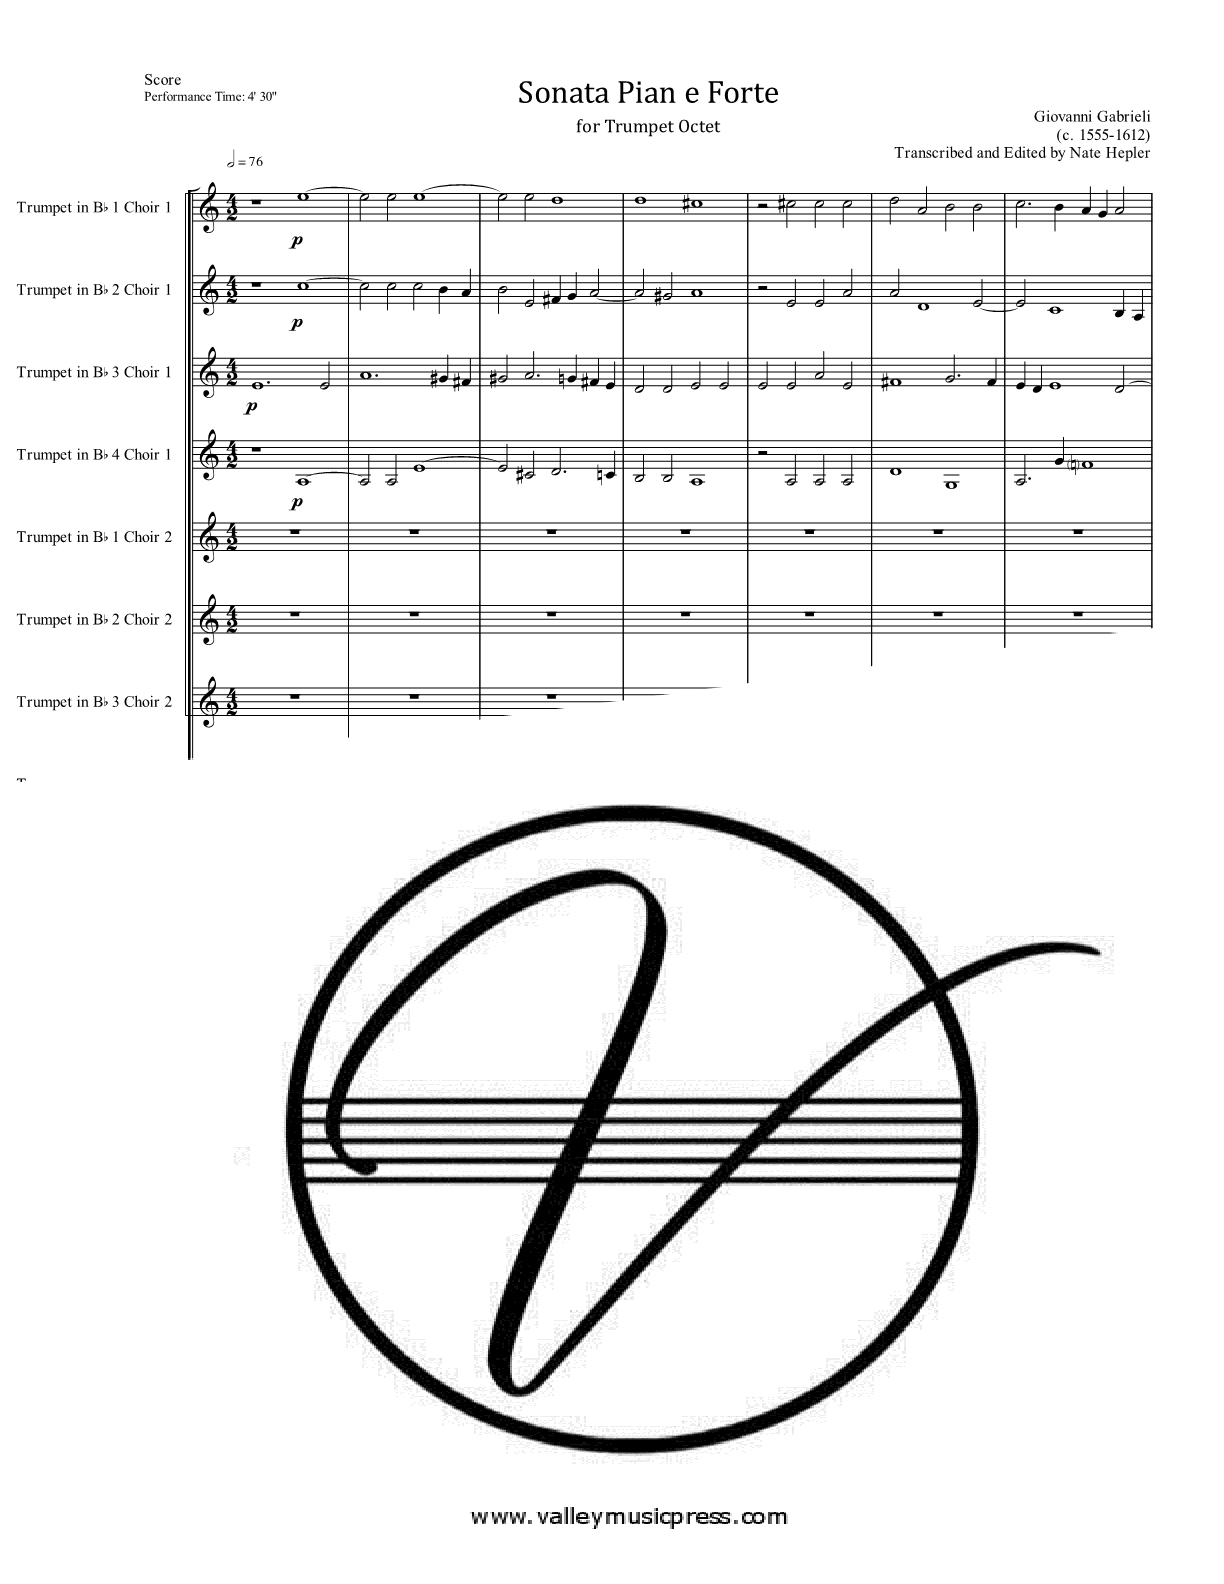 Gabrieli - Sonata Pian e Forte (Trumpet Octet)